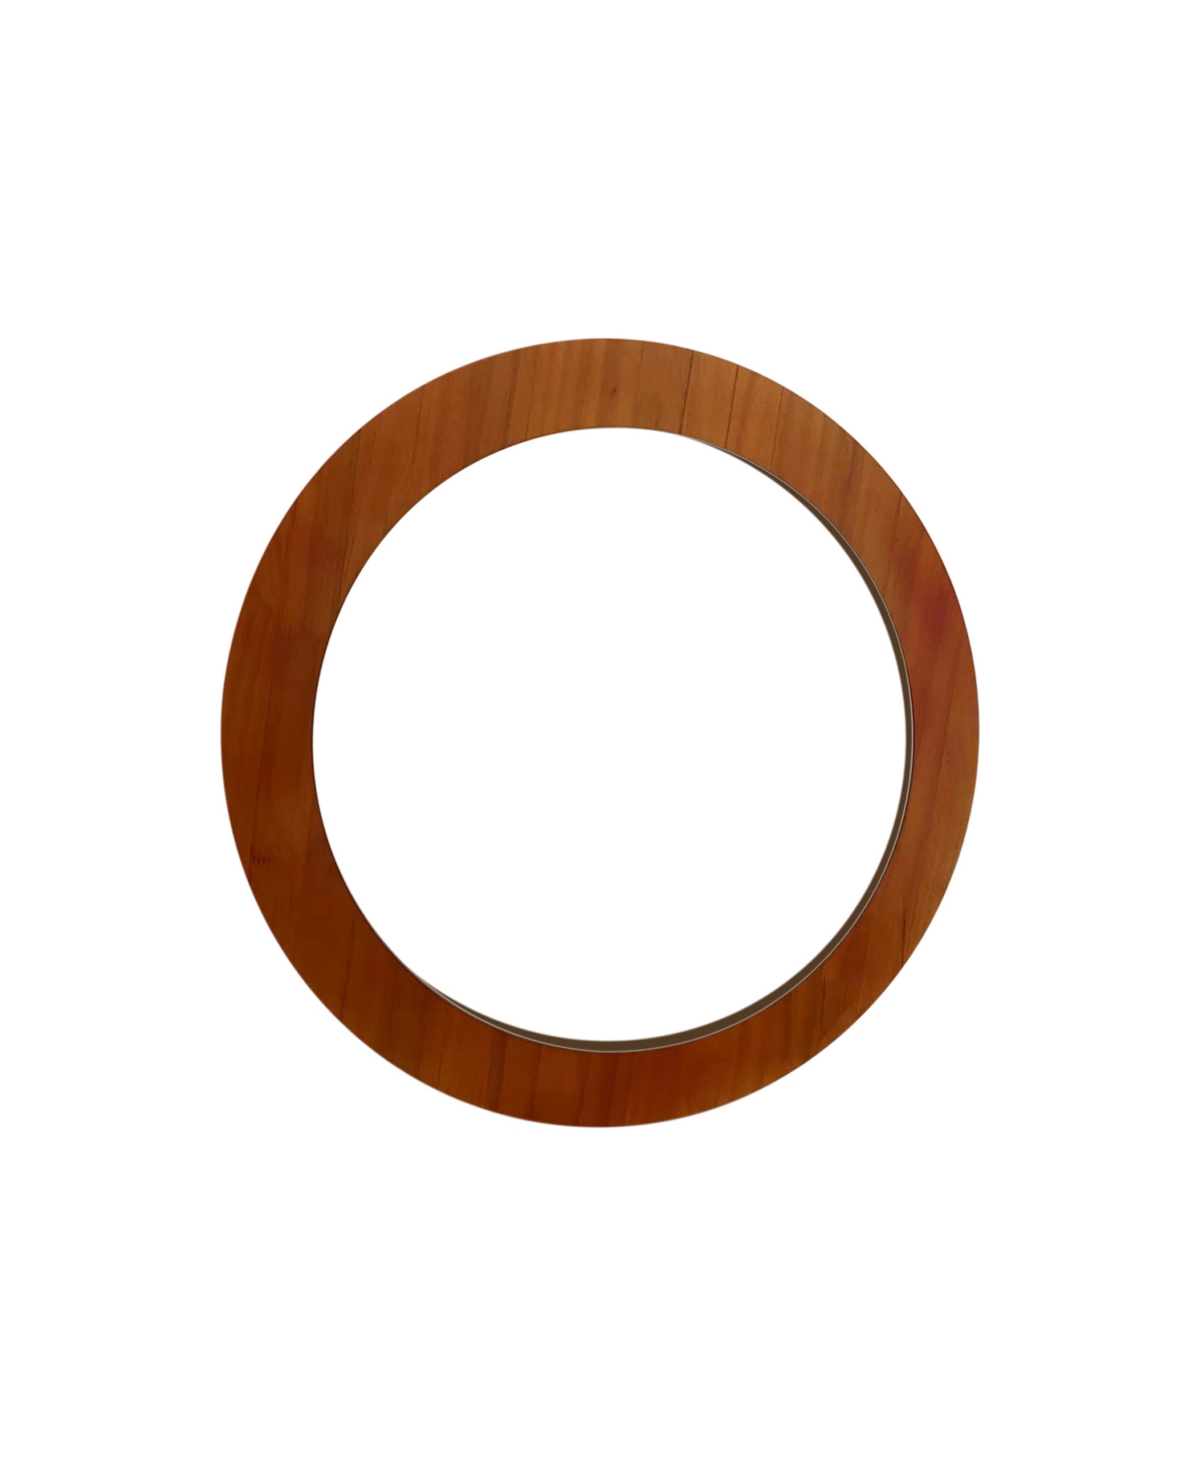 Round Wood Mirror, 29" Diameter - Brown